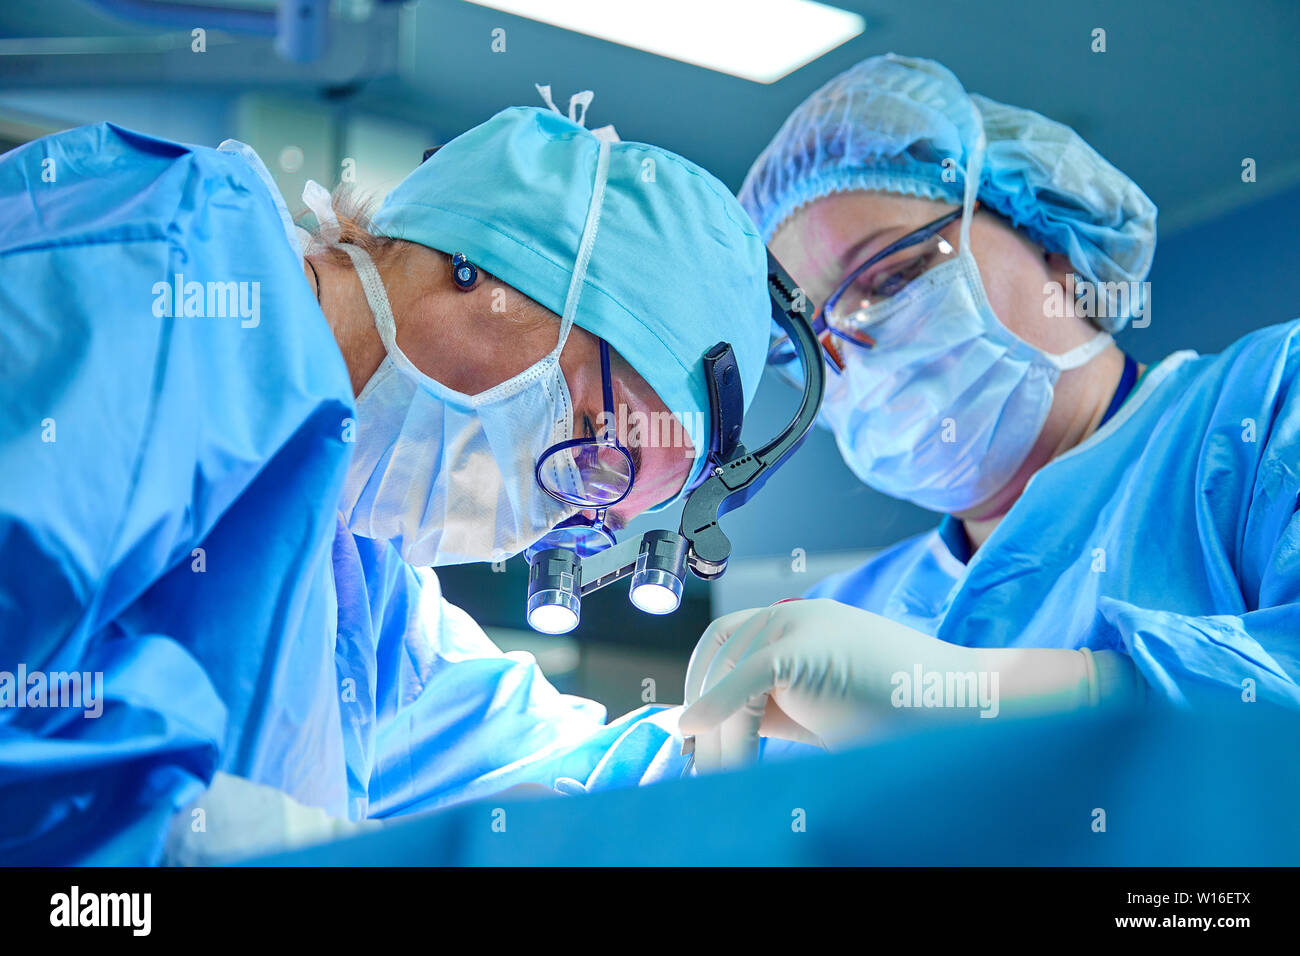 Un chirurgo della squadra in uniforme esegue un intervento su un paziente a un intervento di chirurgia cardiaca clinica. La medicina moderna, un team professionale di chirurghi, salute. Foto Stock